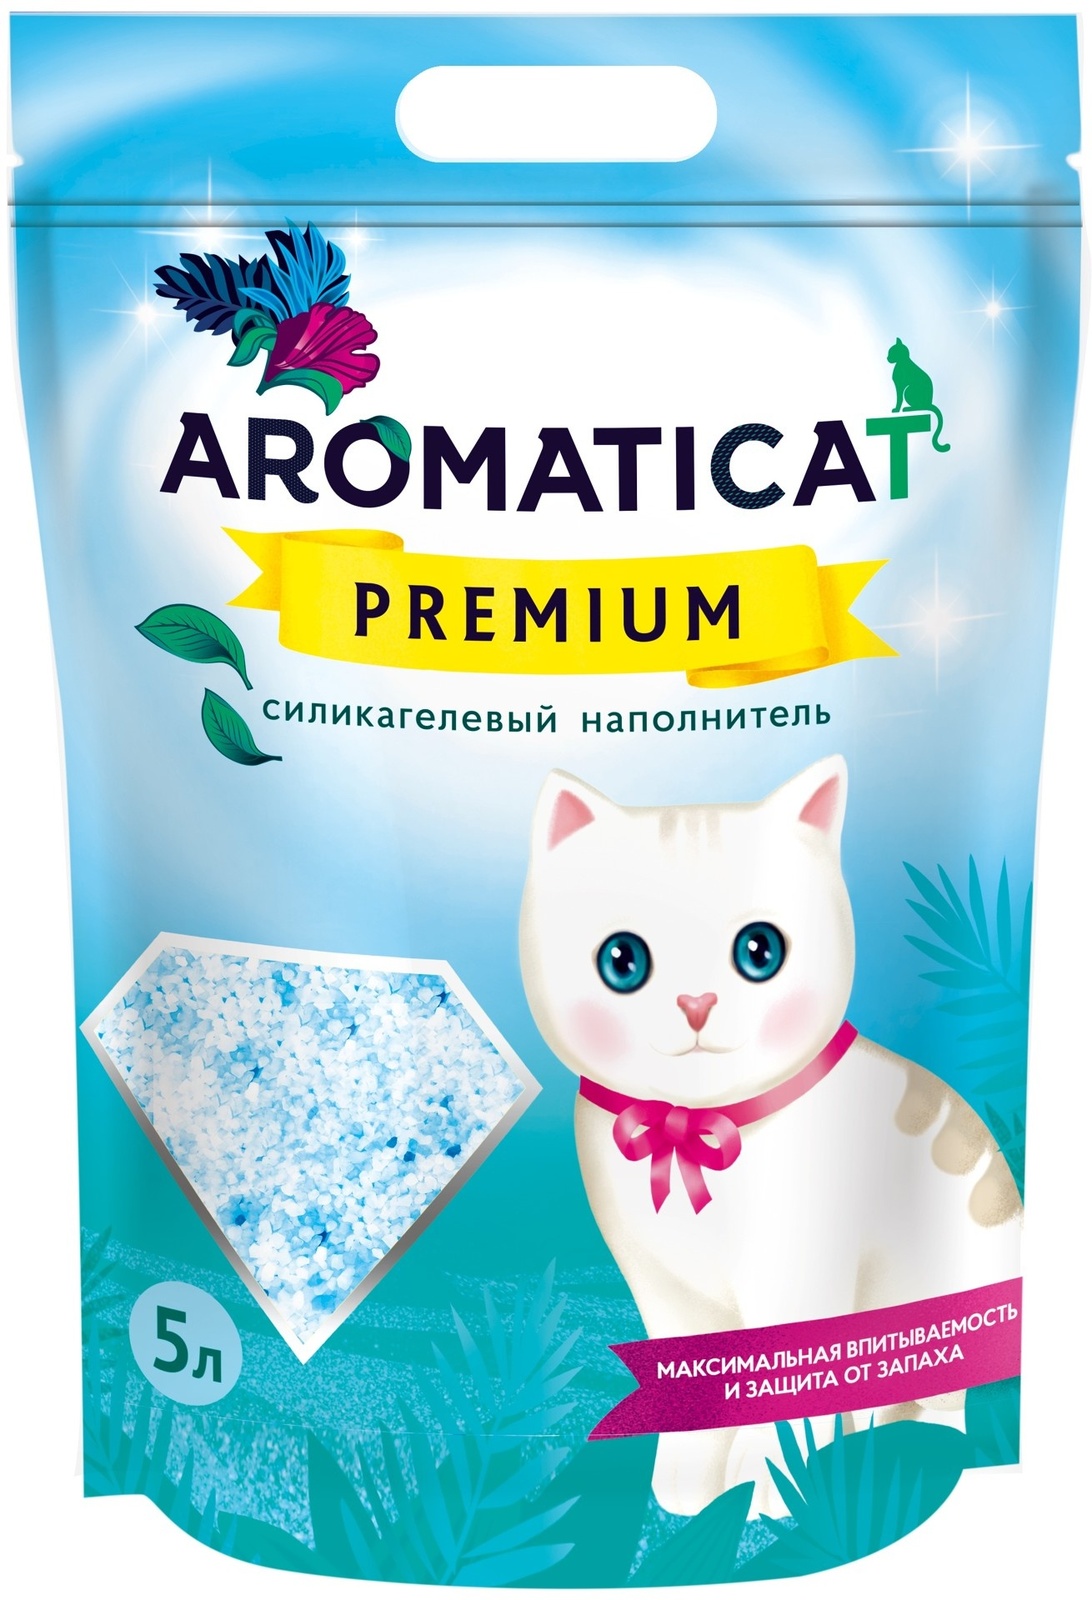 AromatiCat силикагелевый наполнитель Premium (4 кг)